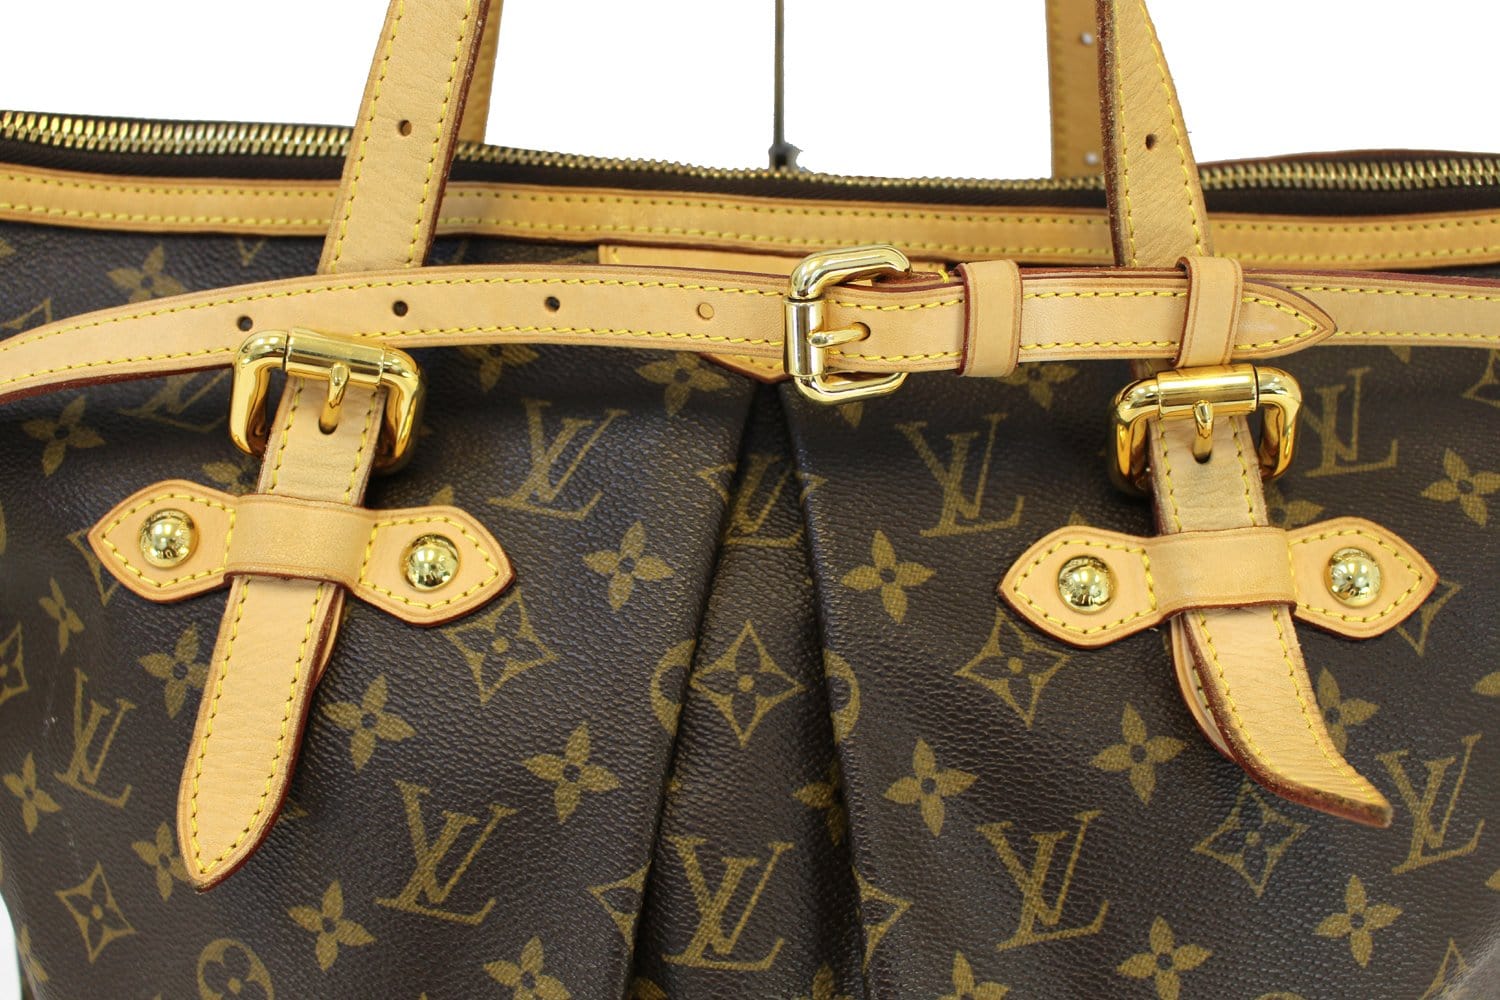 100% authenticity Guaranteed | Louis Vuitton Monogram Shoulder Bag